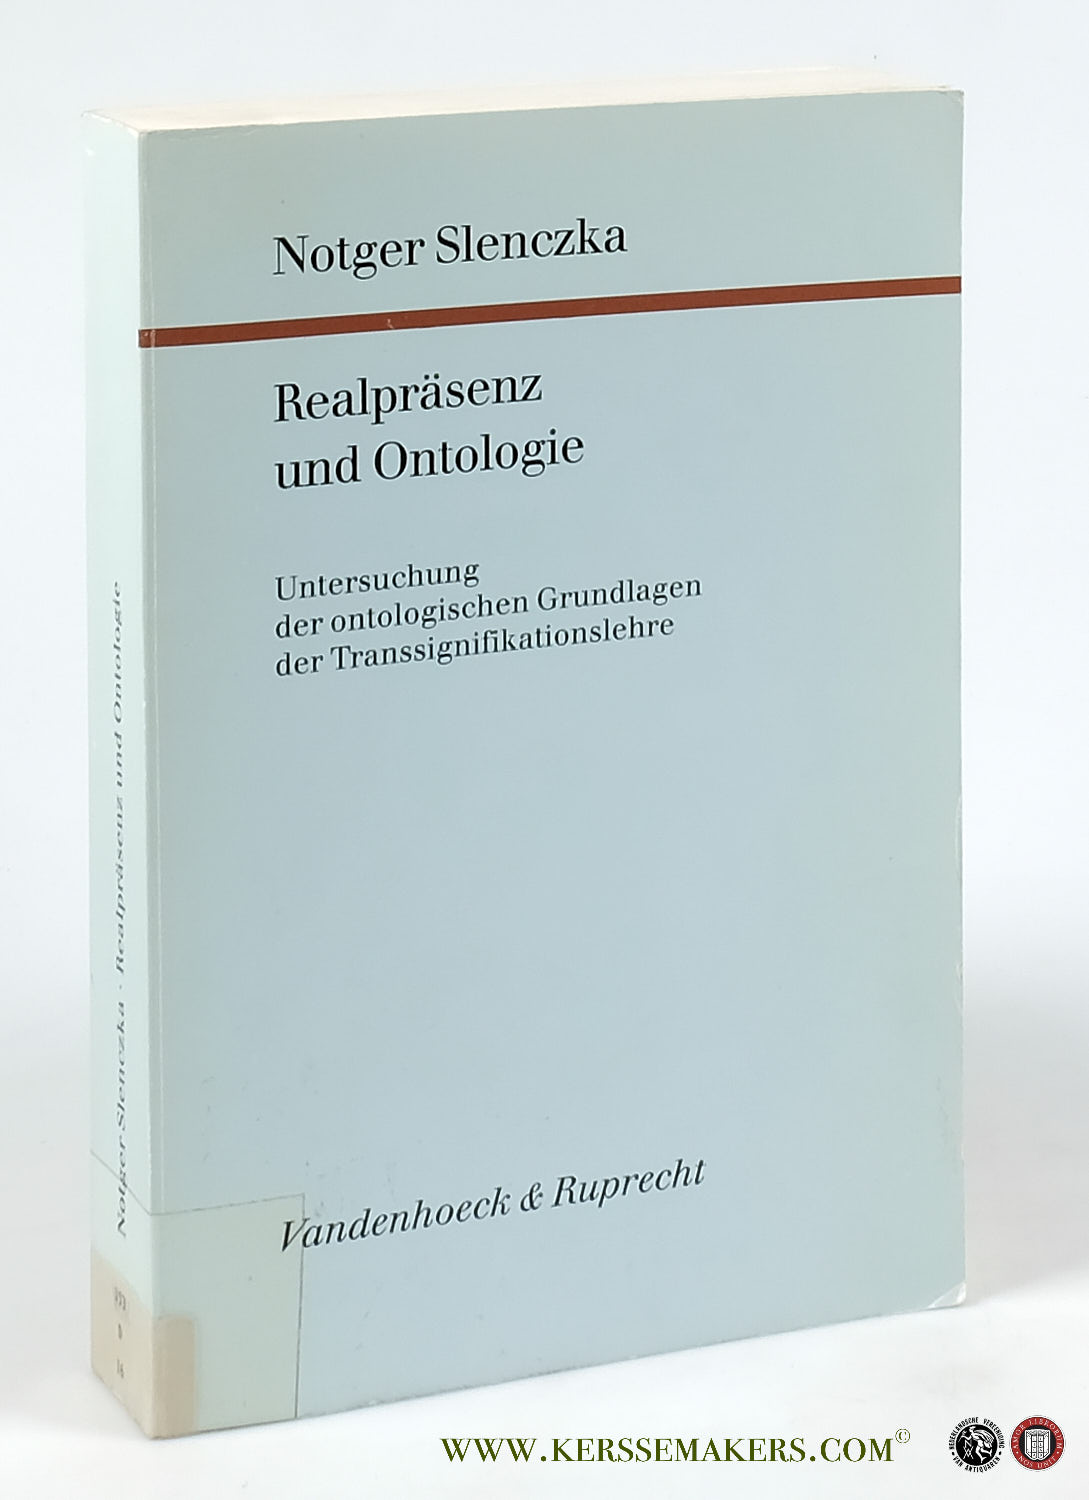 Realpräsenz und Ontologie. Untersuchung der ontologischen Grundlagen der Transsignifikationslehre. - Slenczka, Notger.